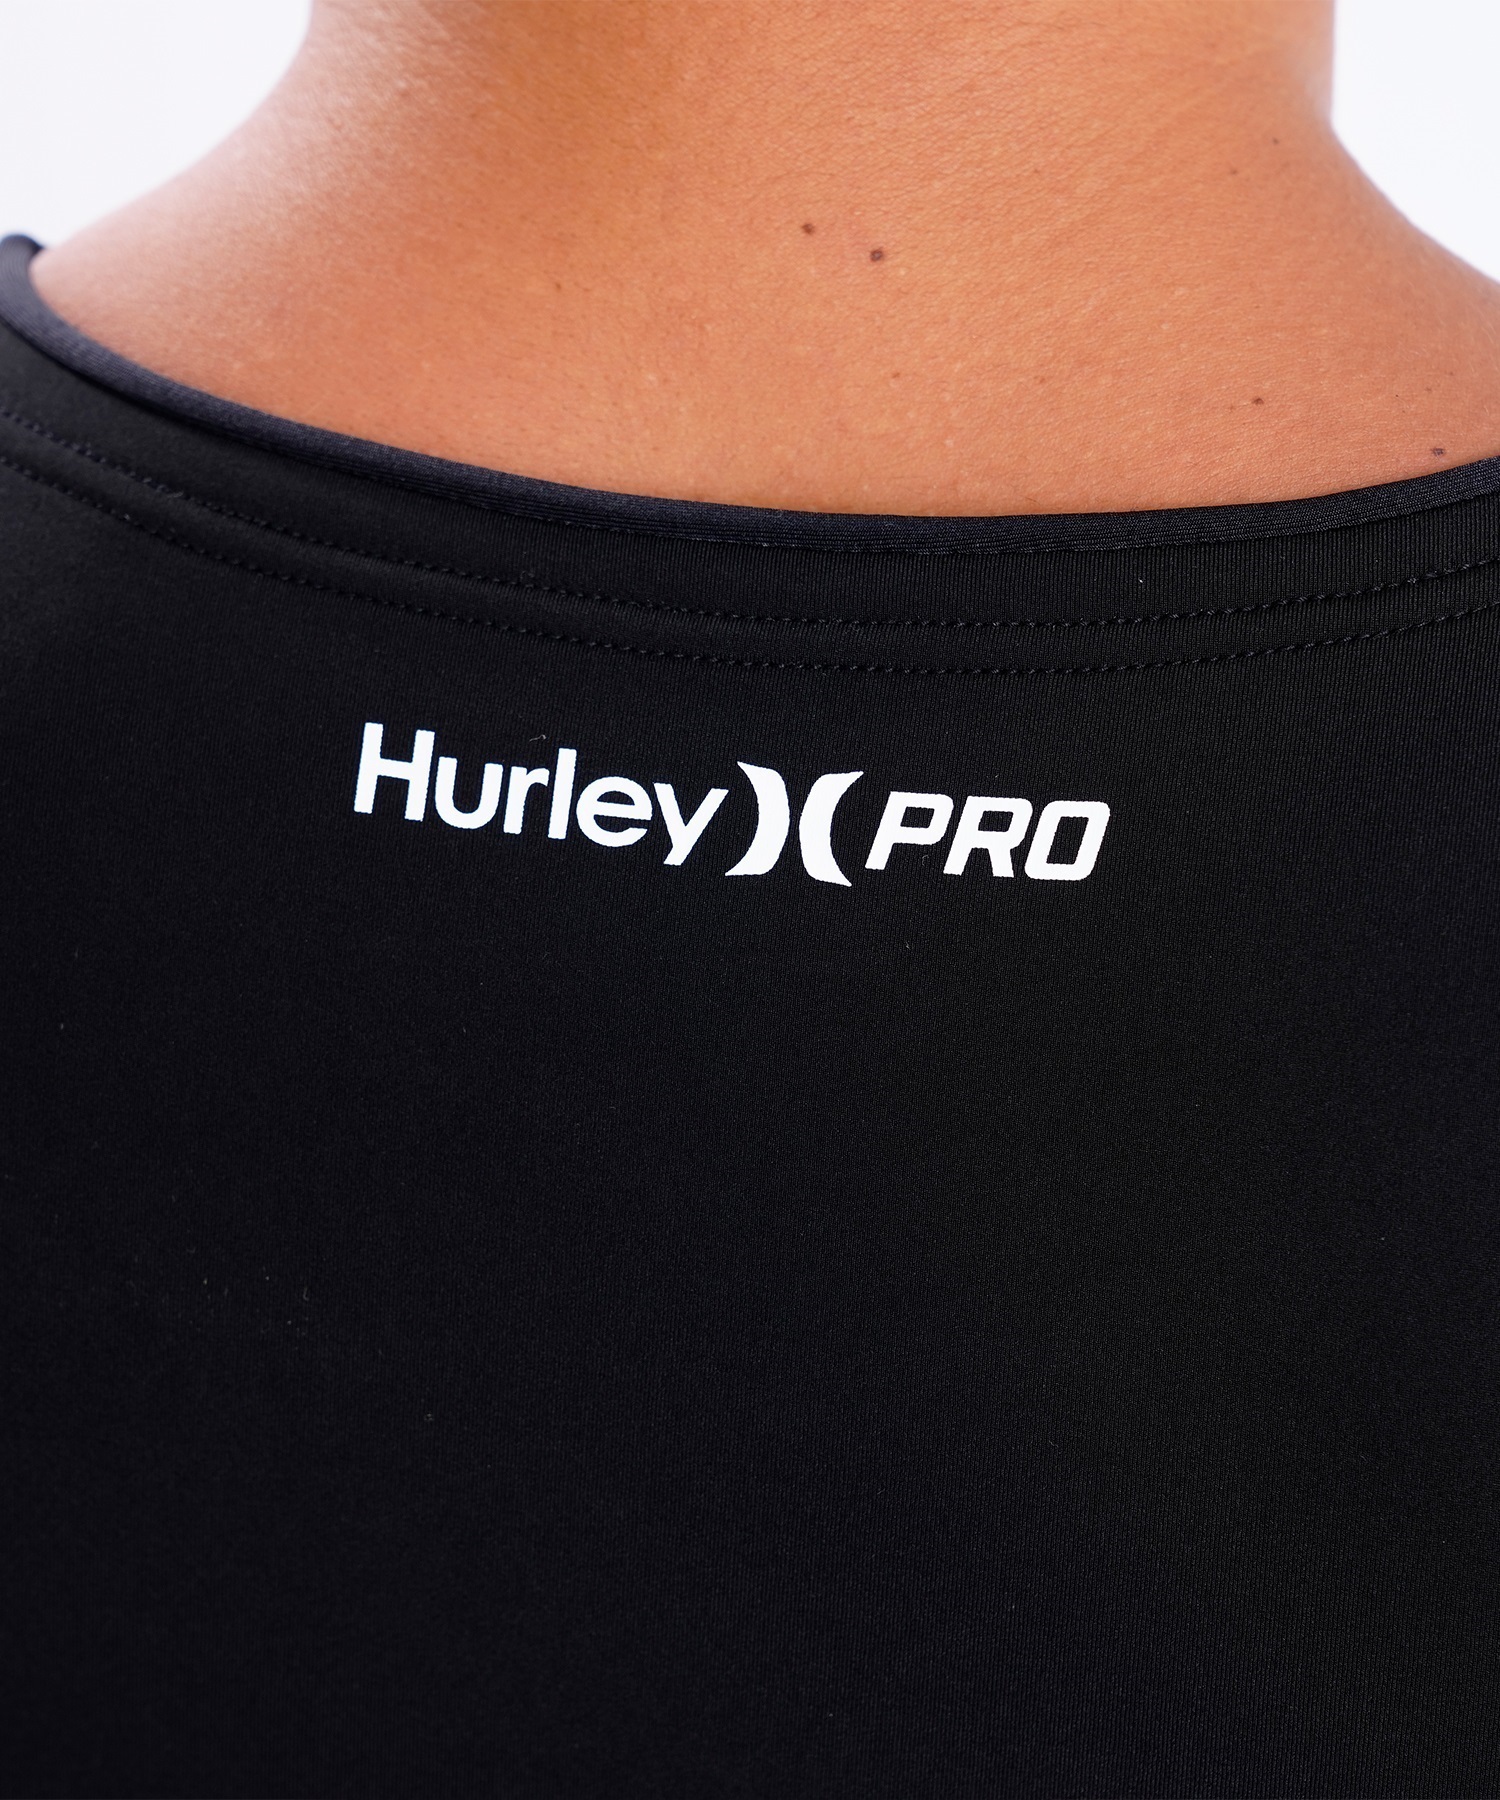 Hurley ハーレー HYPERW COMPRESSION メンズ MHPCSJ23 ウェットスーツ 